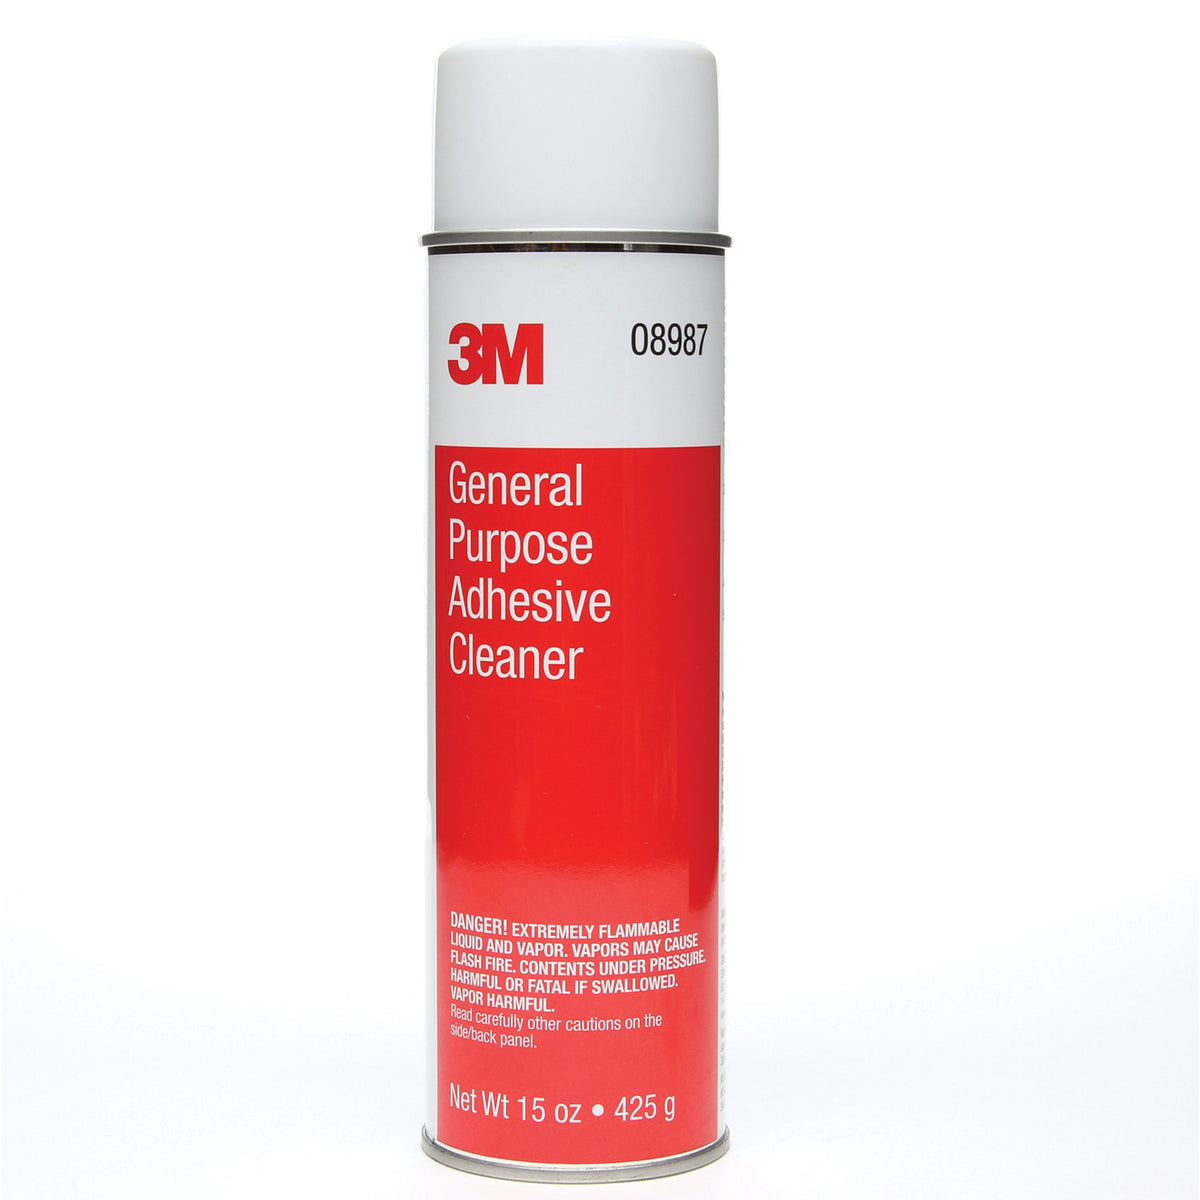 3M 08987 General Purpose Adhesive Cleaner, 15 oz.